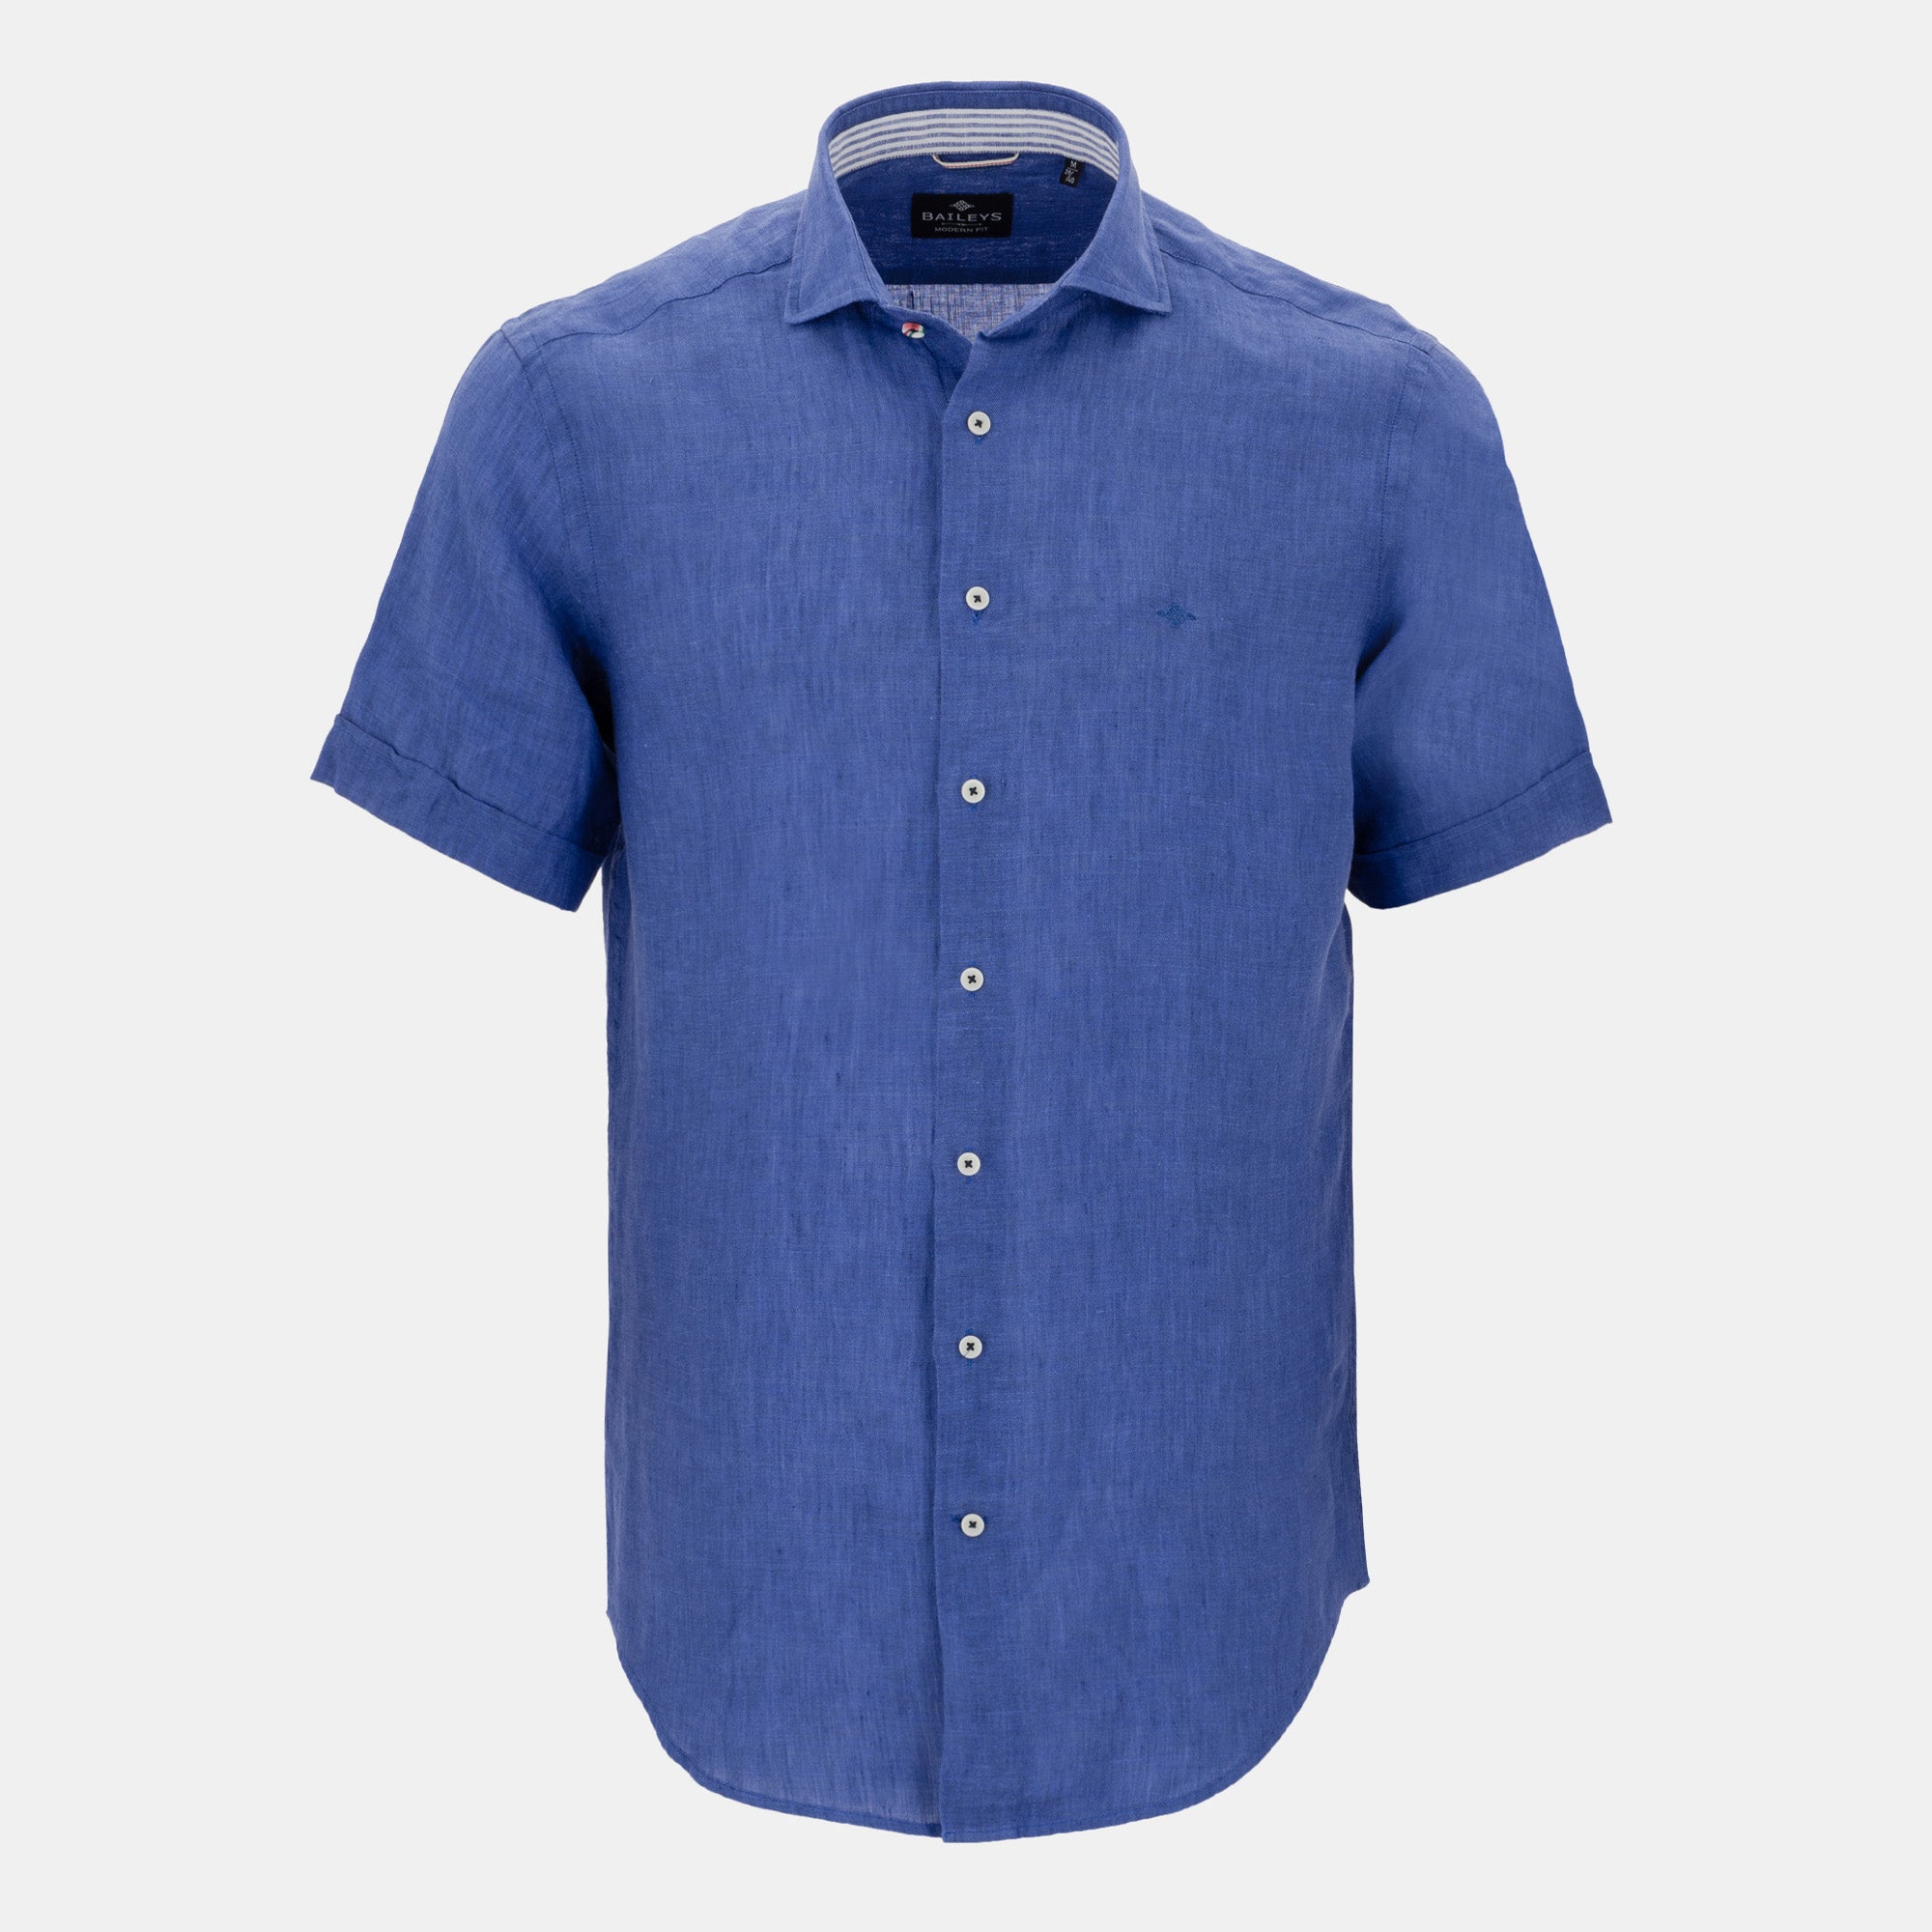 Modern fit short sleeve shirt 216816